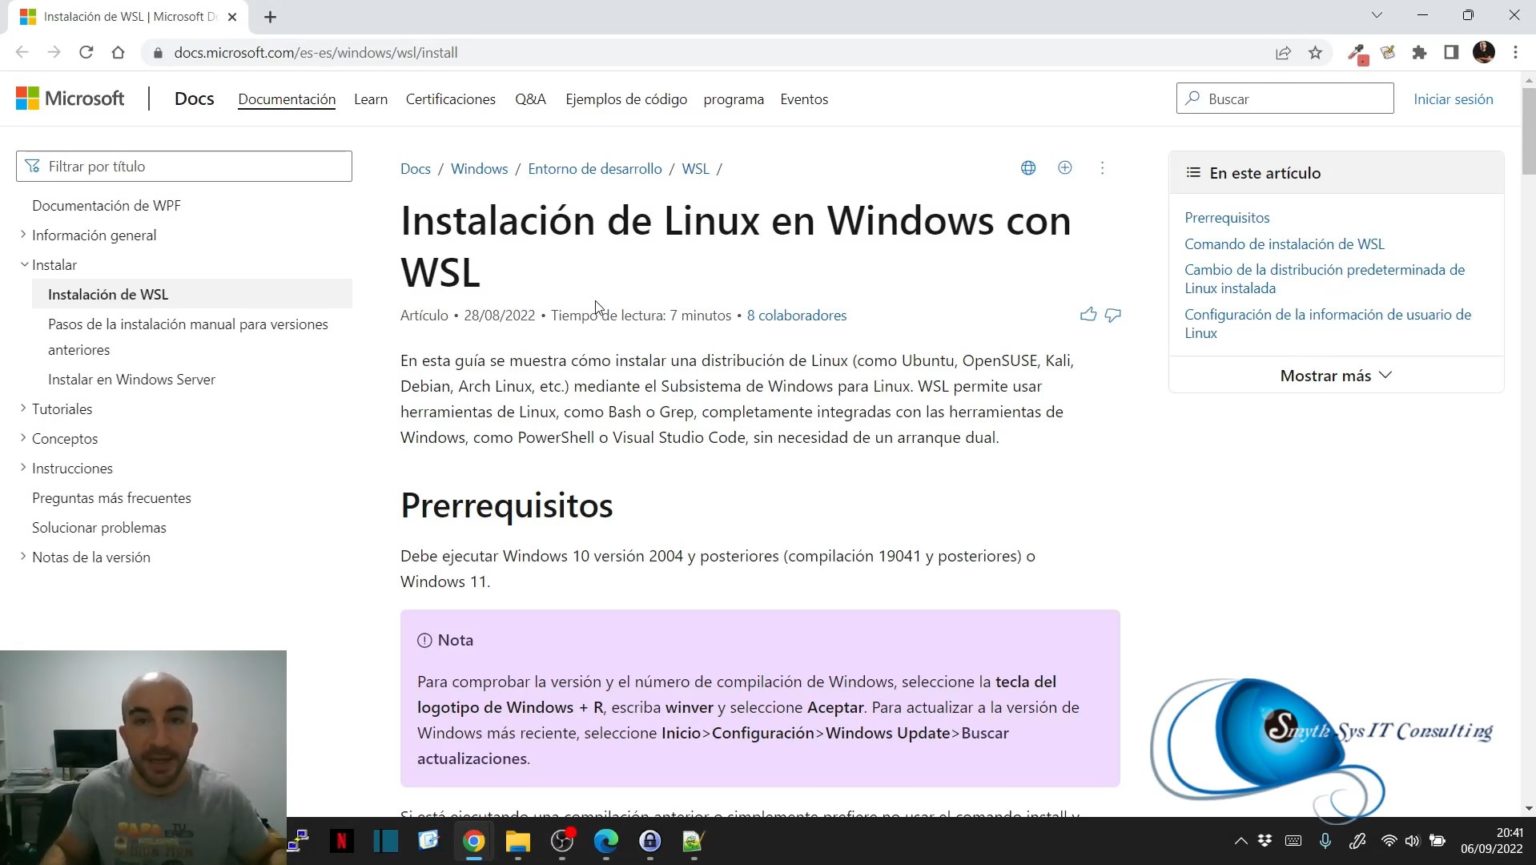 Instalar Wsl Subsistema De Linux Para Windows En Windows 11 Smythsys It Consulting 0678